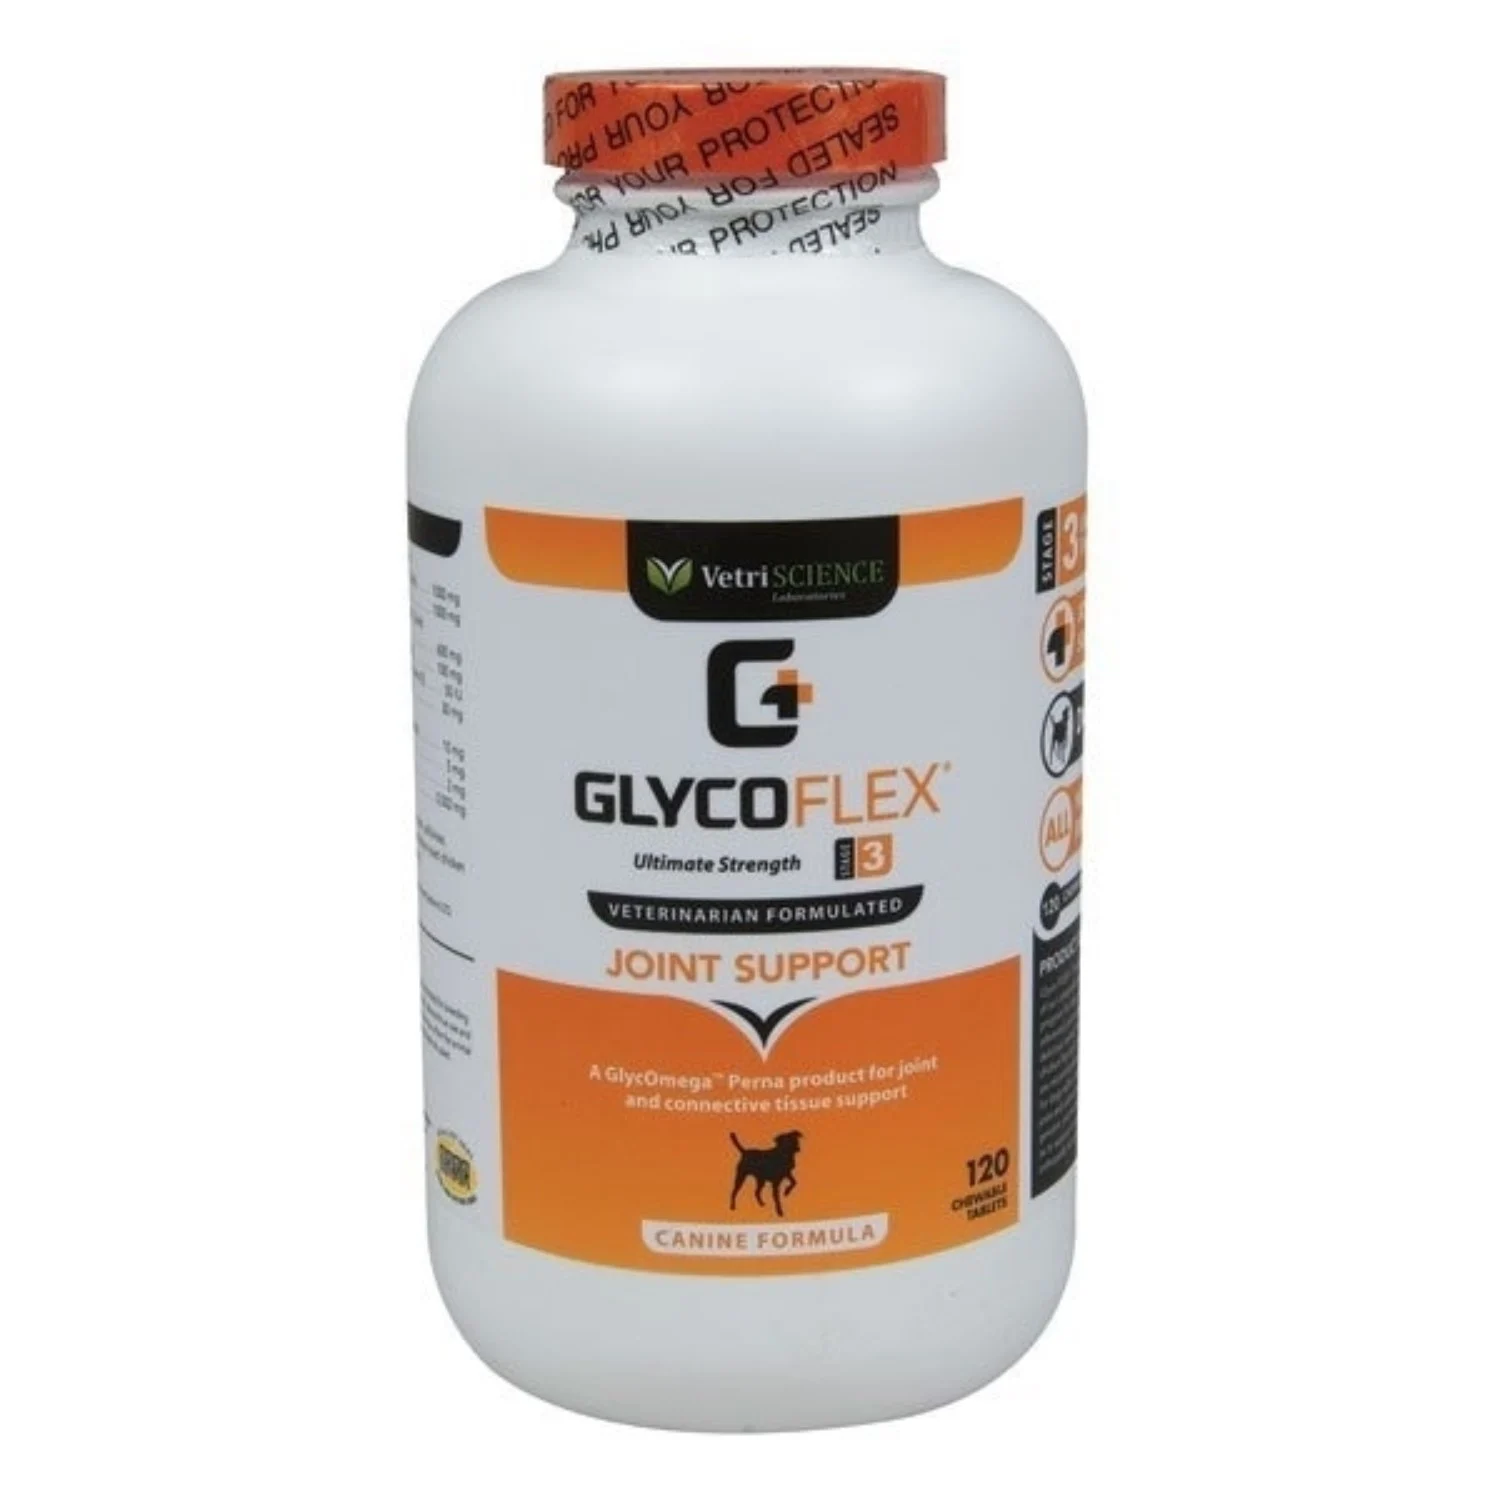 Supliment pentru suportul articulatiilor la caini Glycoflex 3, 90 tablete, Vetri Science